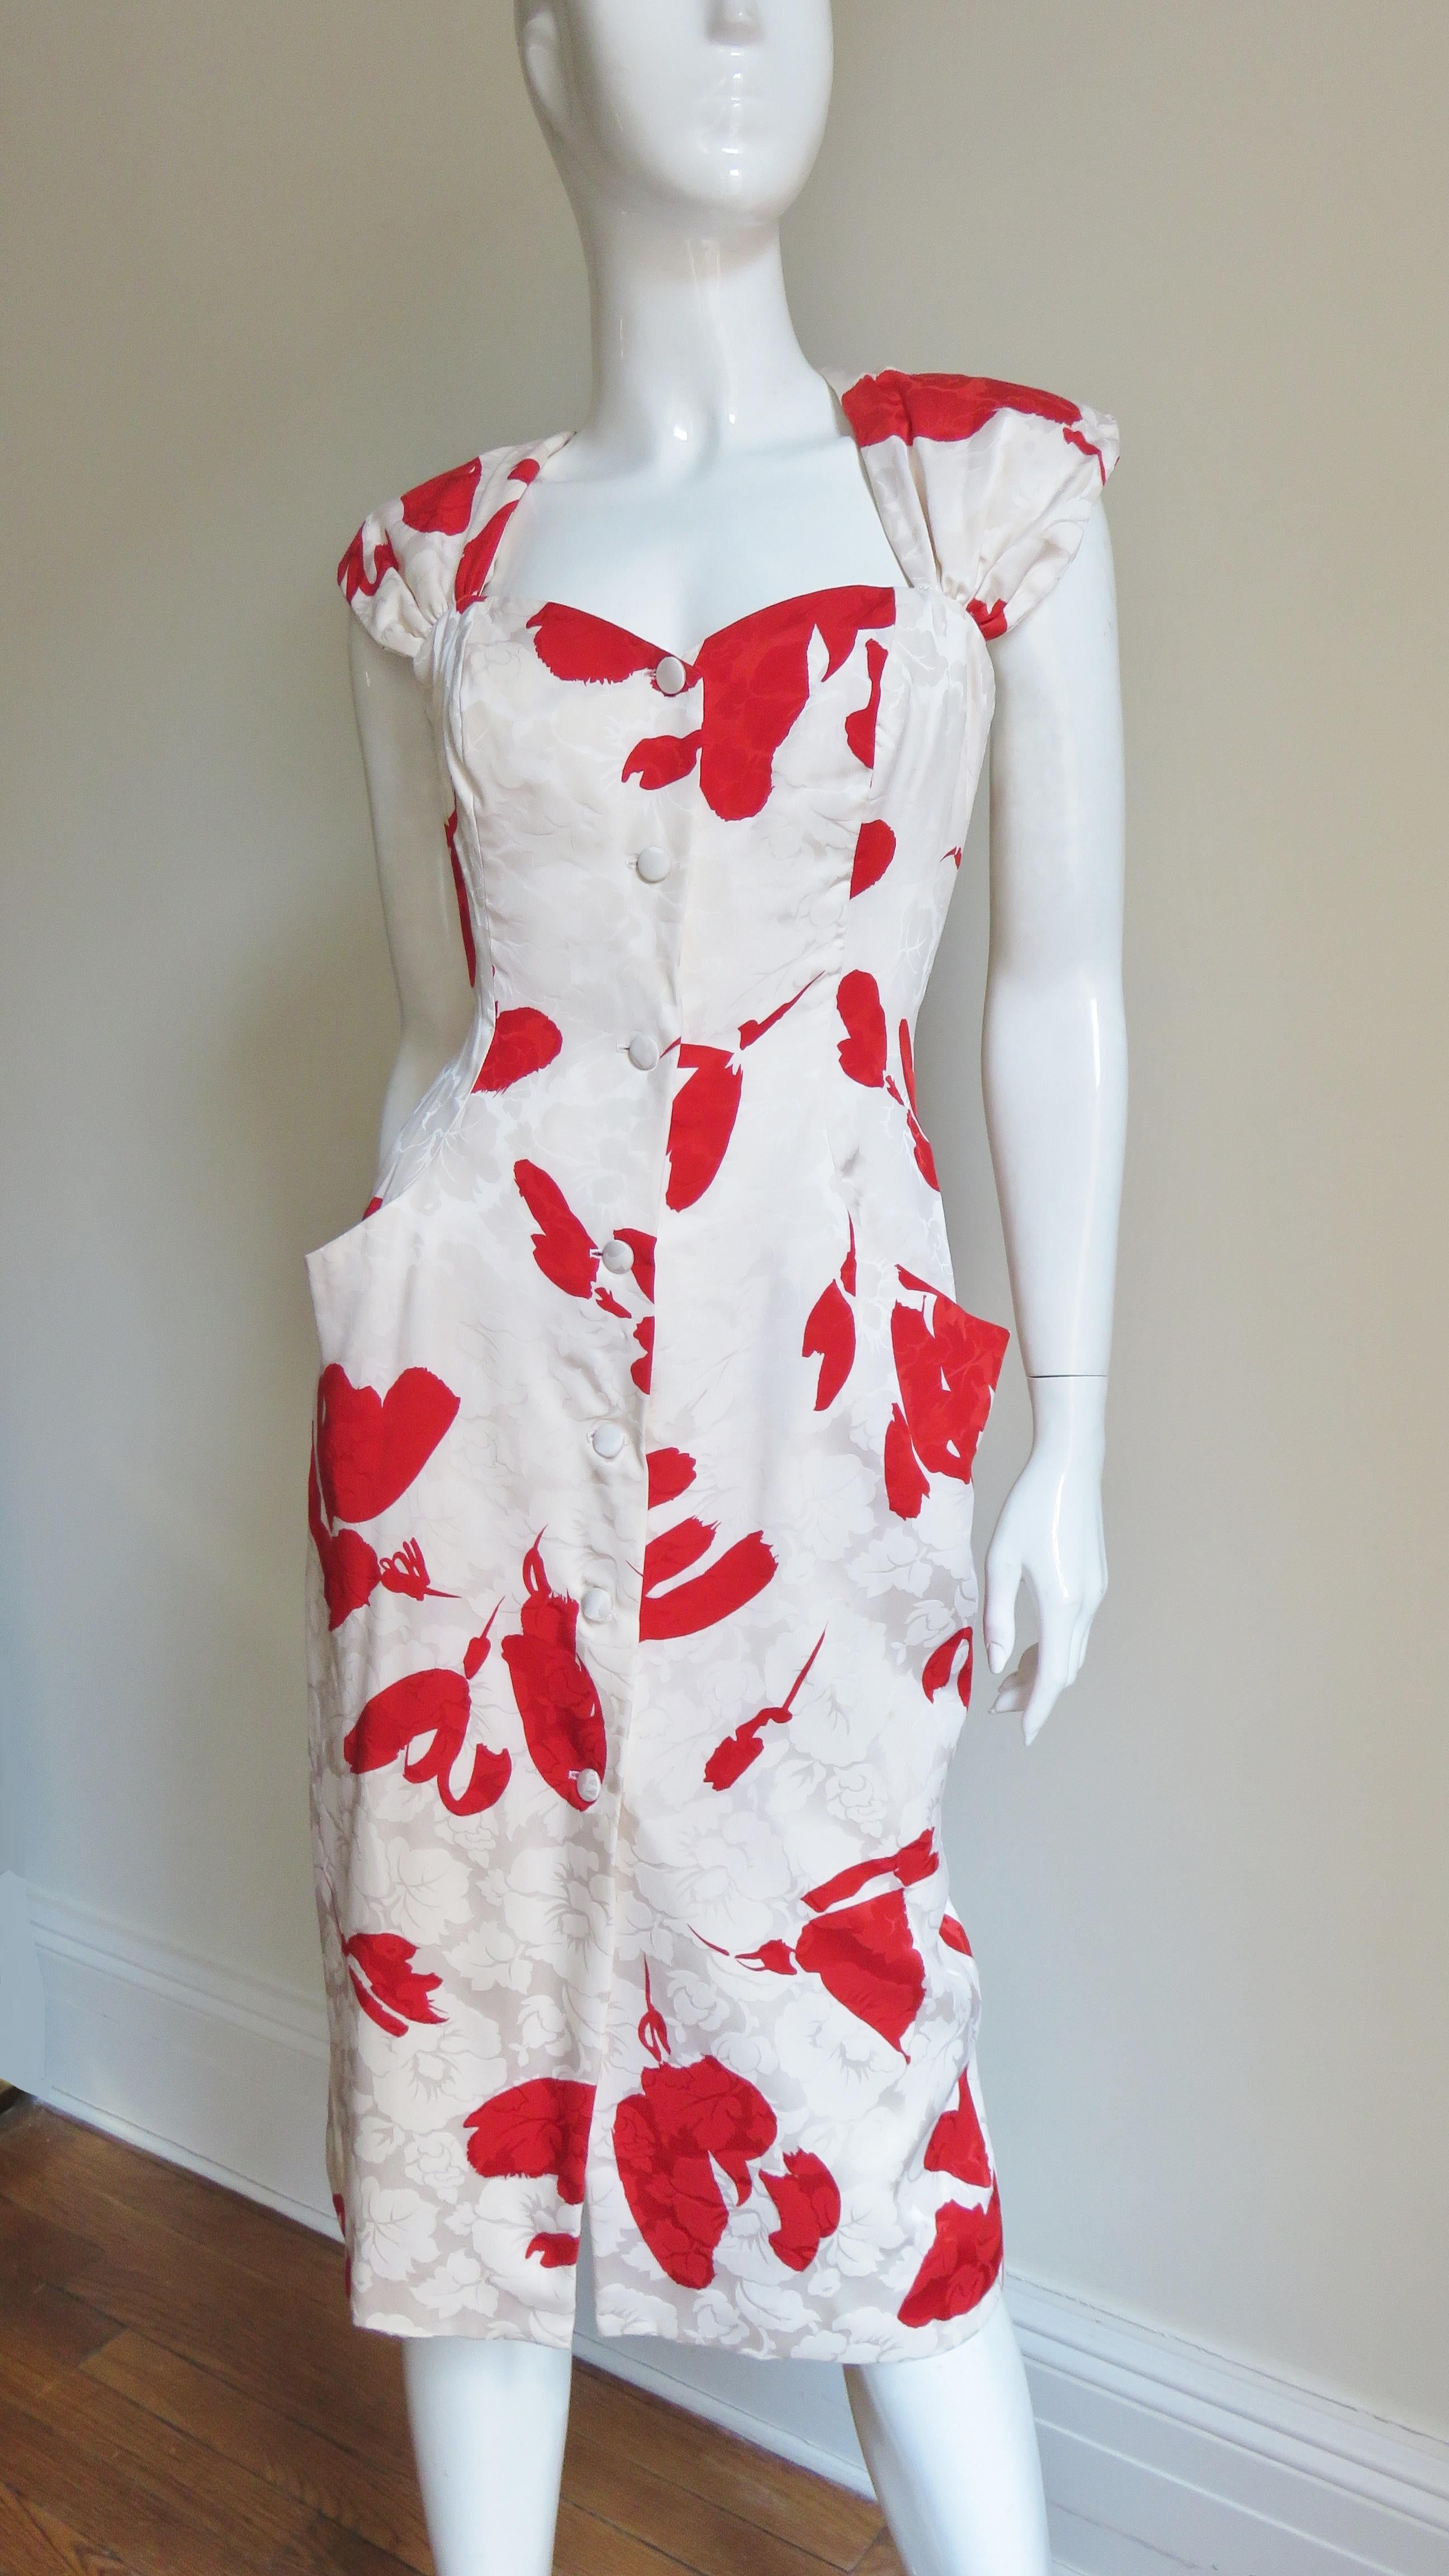 Une belle robe damassée en soie blanc cassé et rouge à fleurs de Vicky Tiel.  Il est ajusté à la taille, possède des poches sur les hanches et se ferme à l'aide de boutons recouverts sur le devant. Les bretelles se resserrent en se croisant dans le